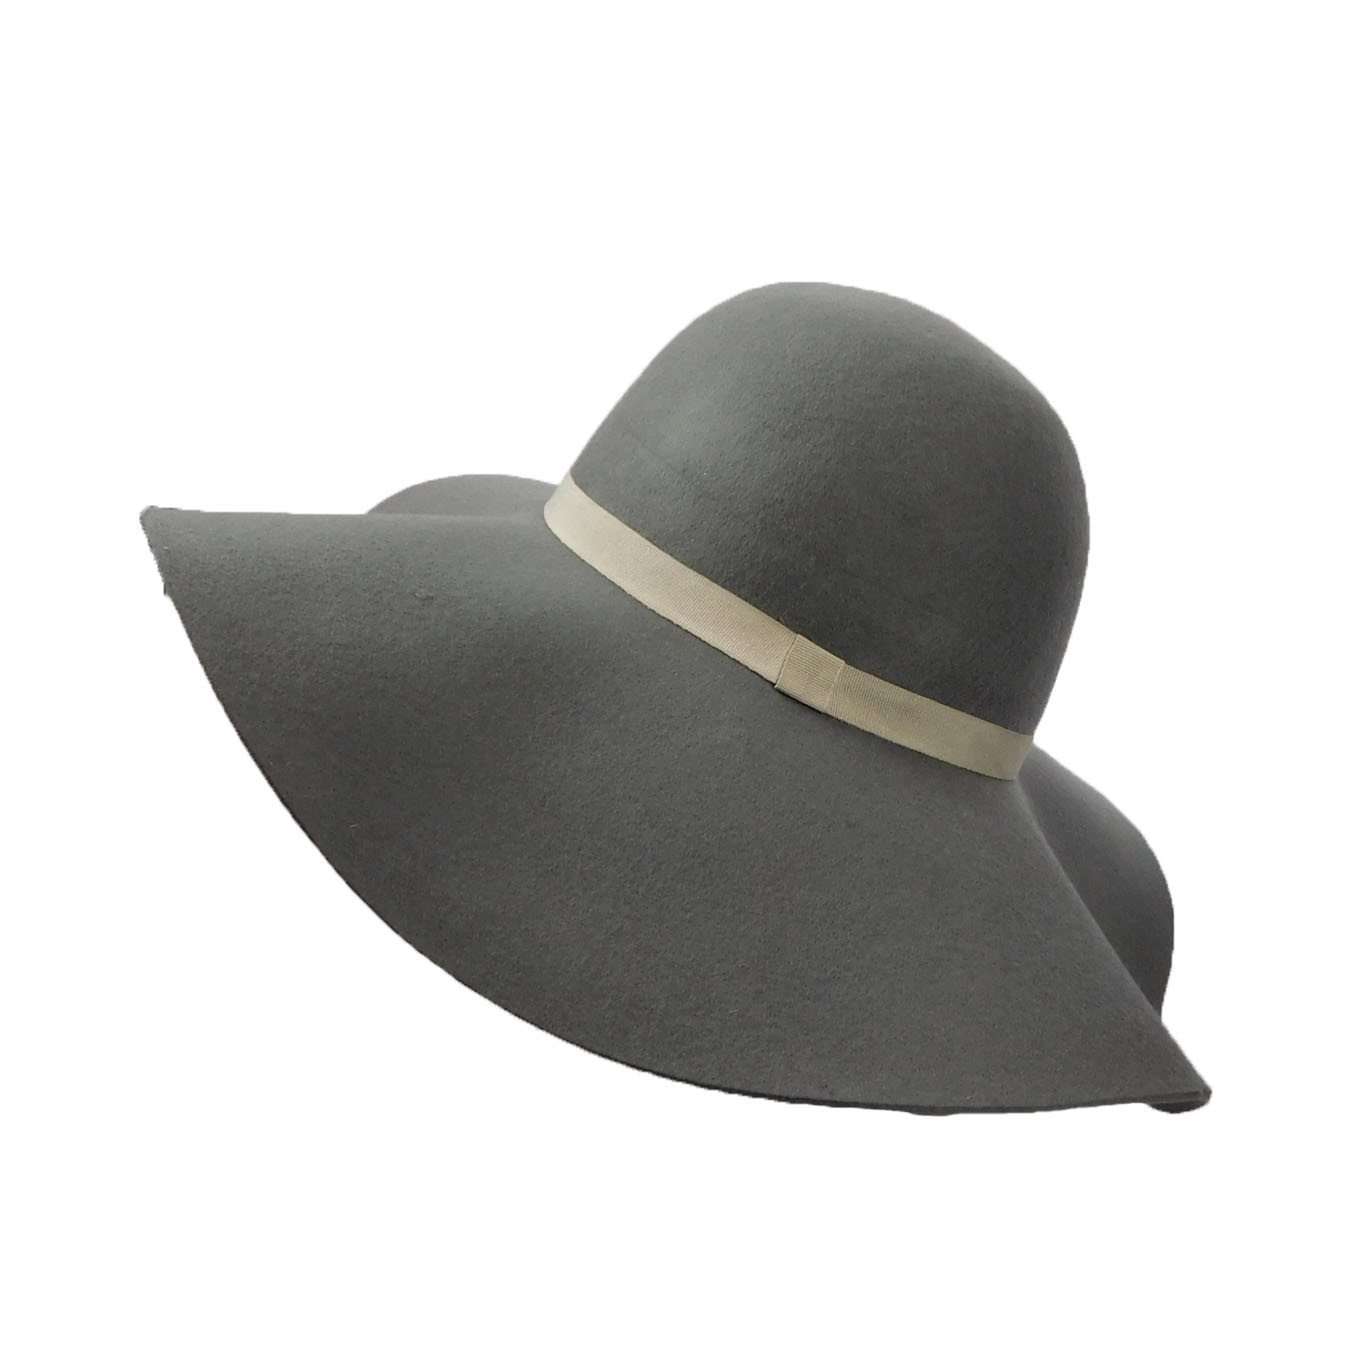 Wool Felt Wide Brim Hat for Women Wide Brim Sun Hat Boardwalk Style Hats    